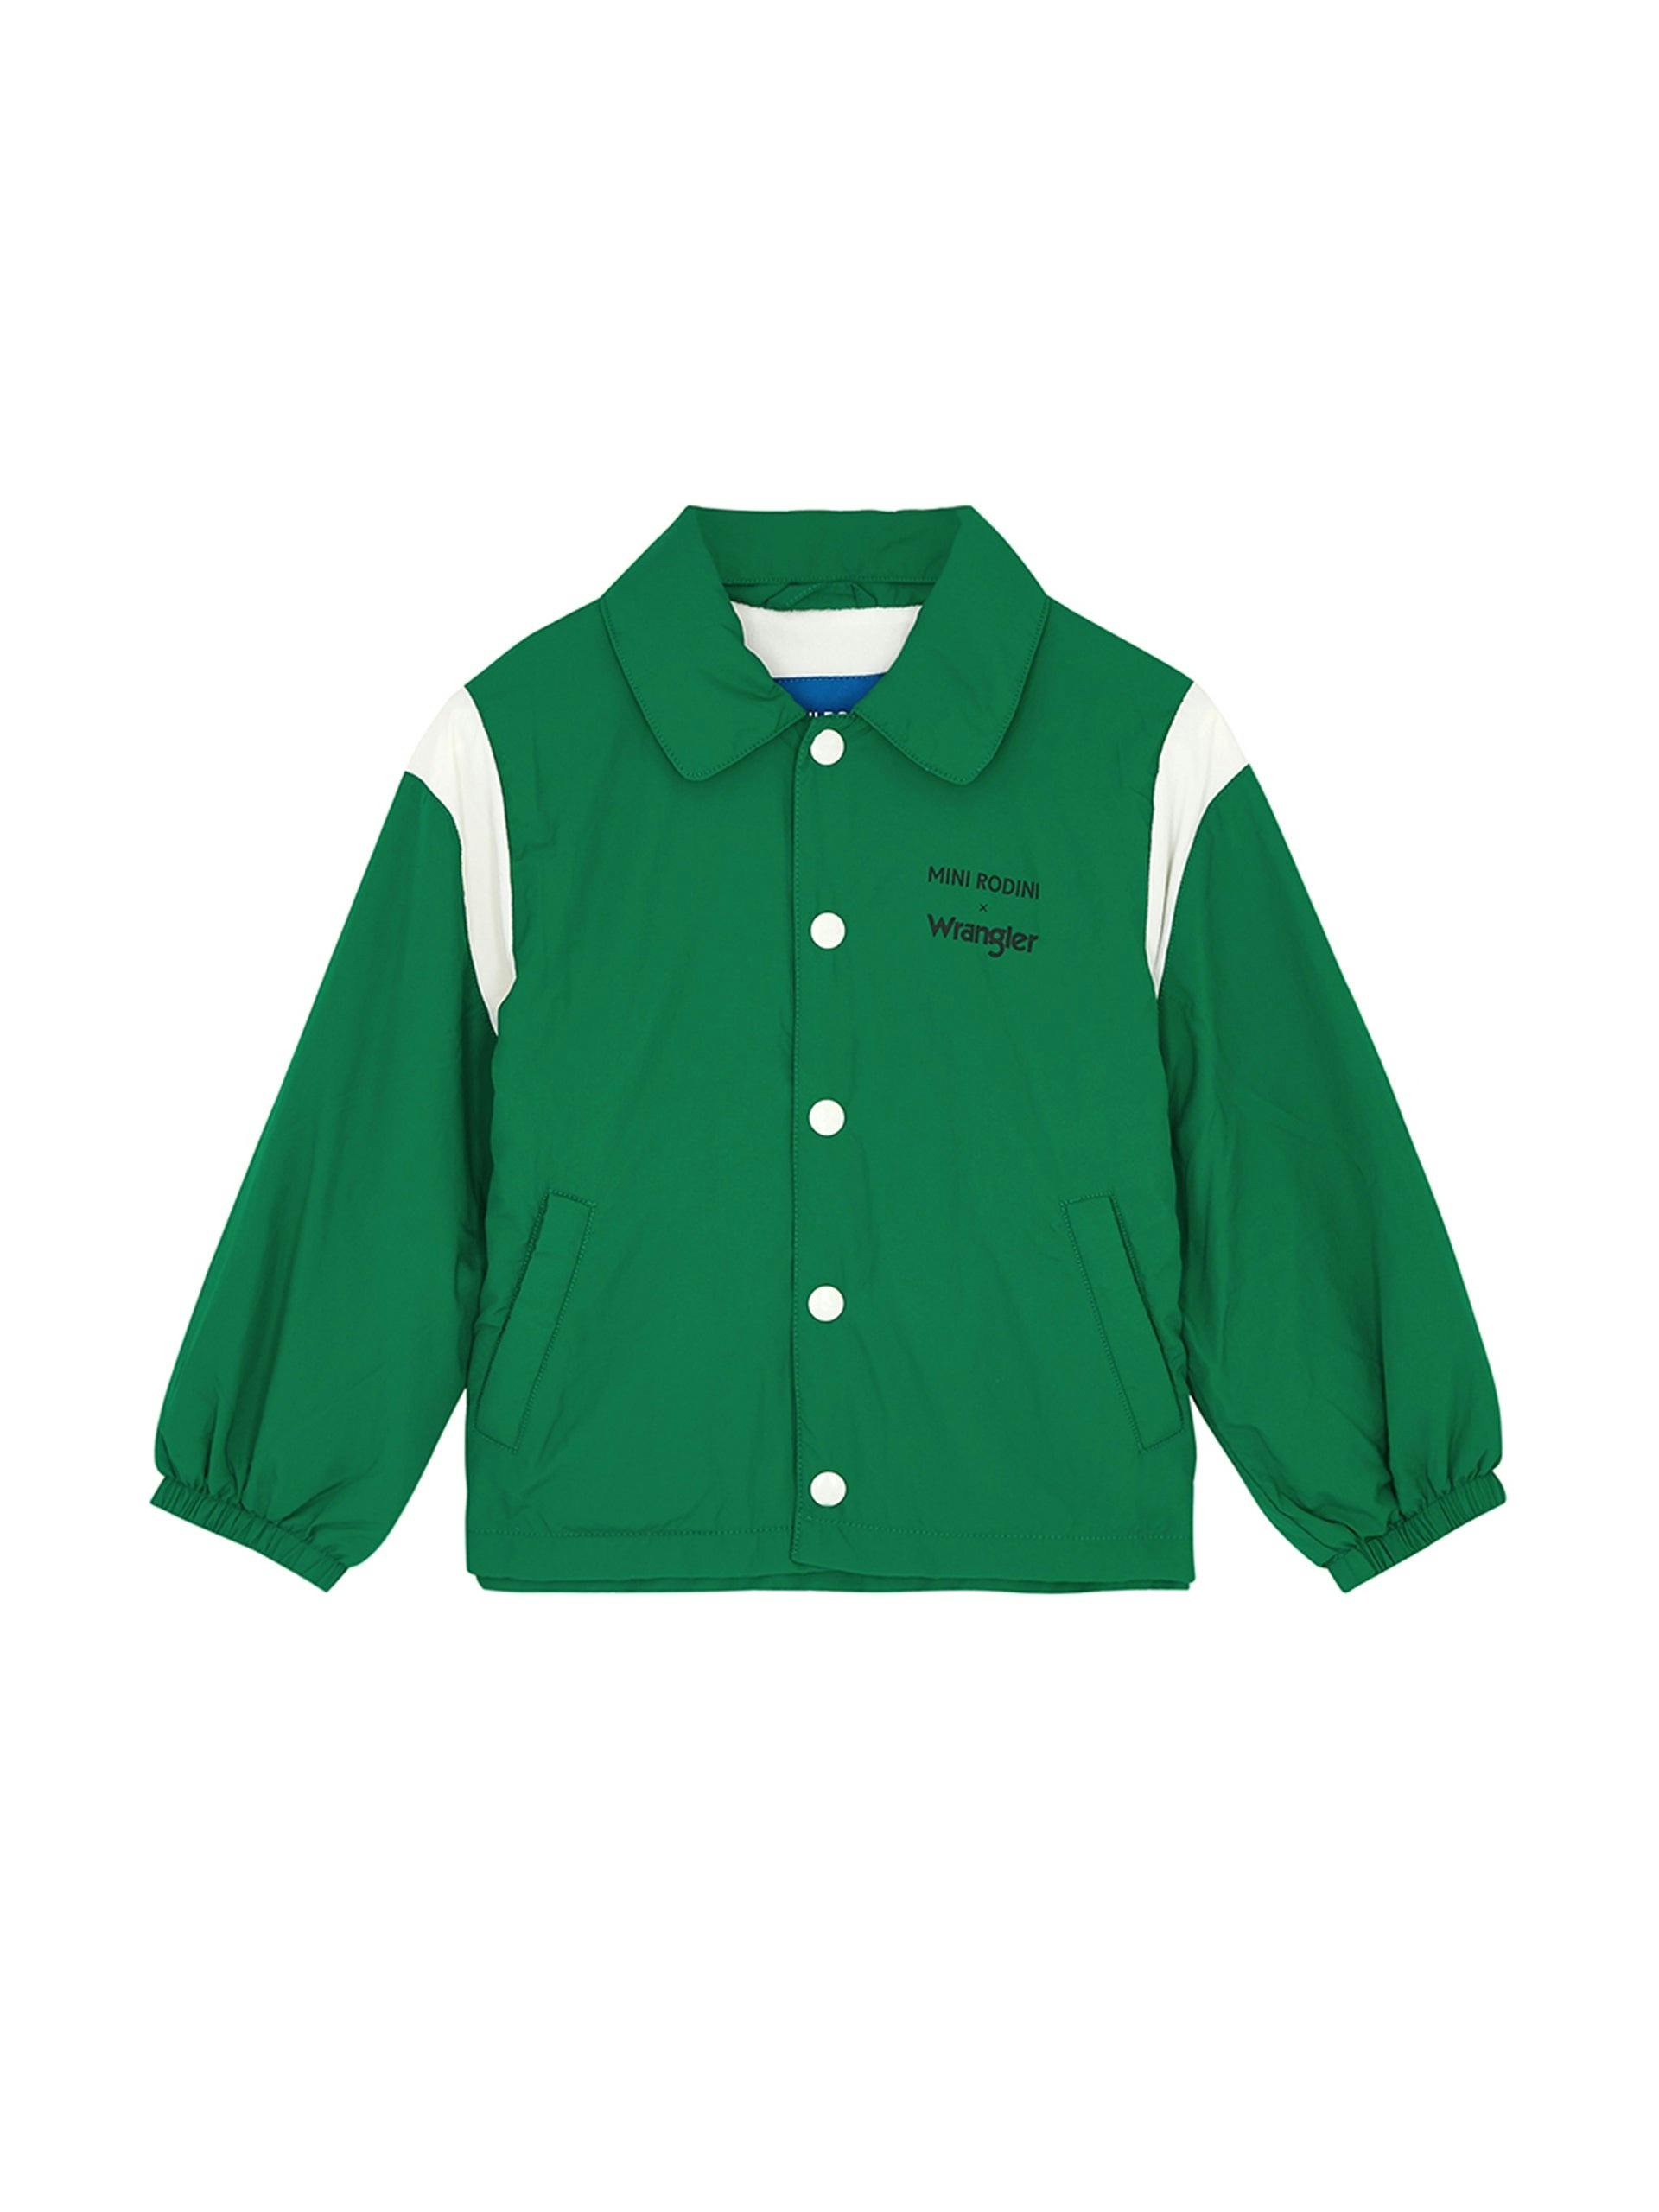 Green shell jacket